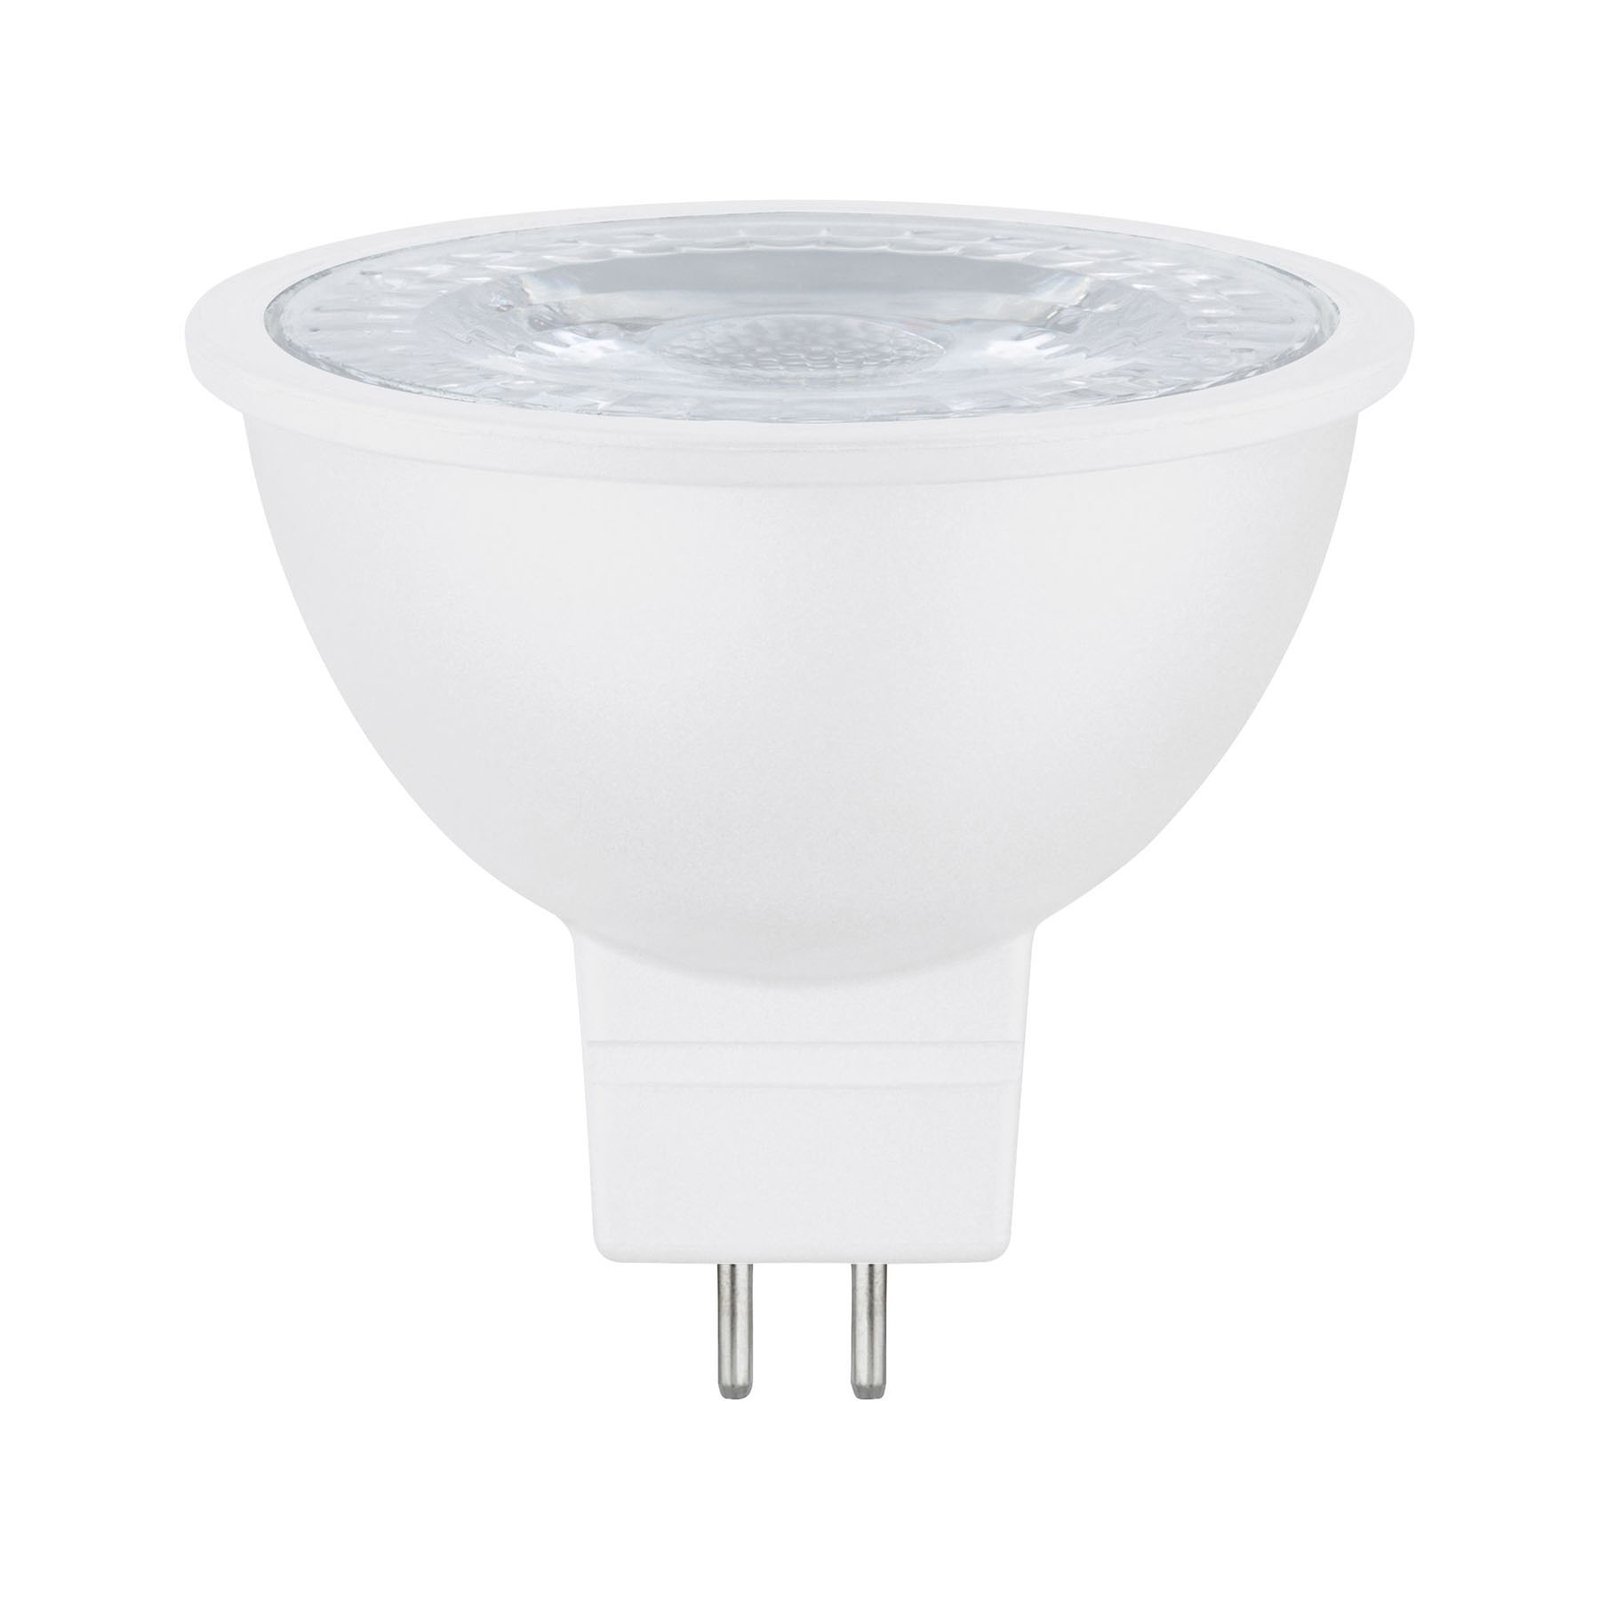 Paulmann reflector LED bulb GU5.3 6.5 W 827 white